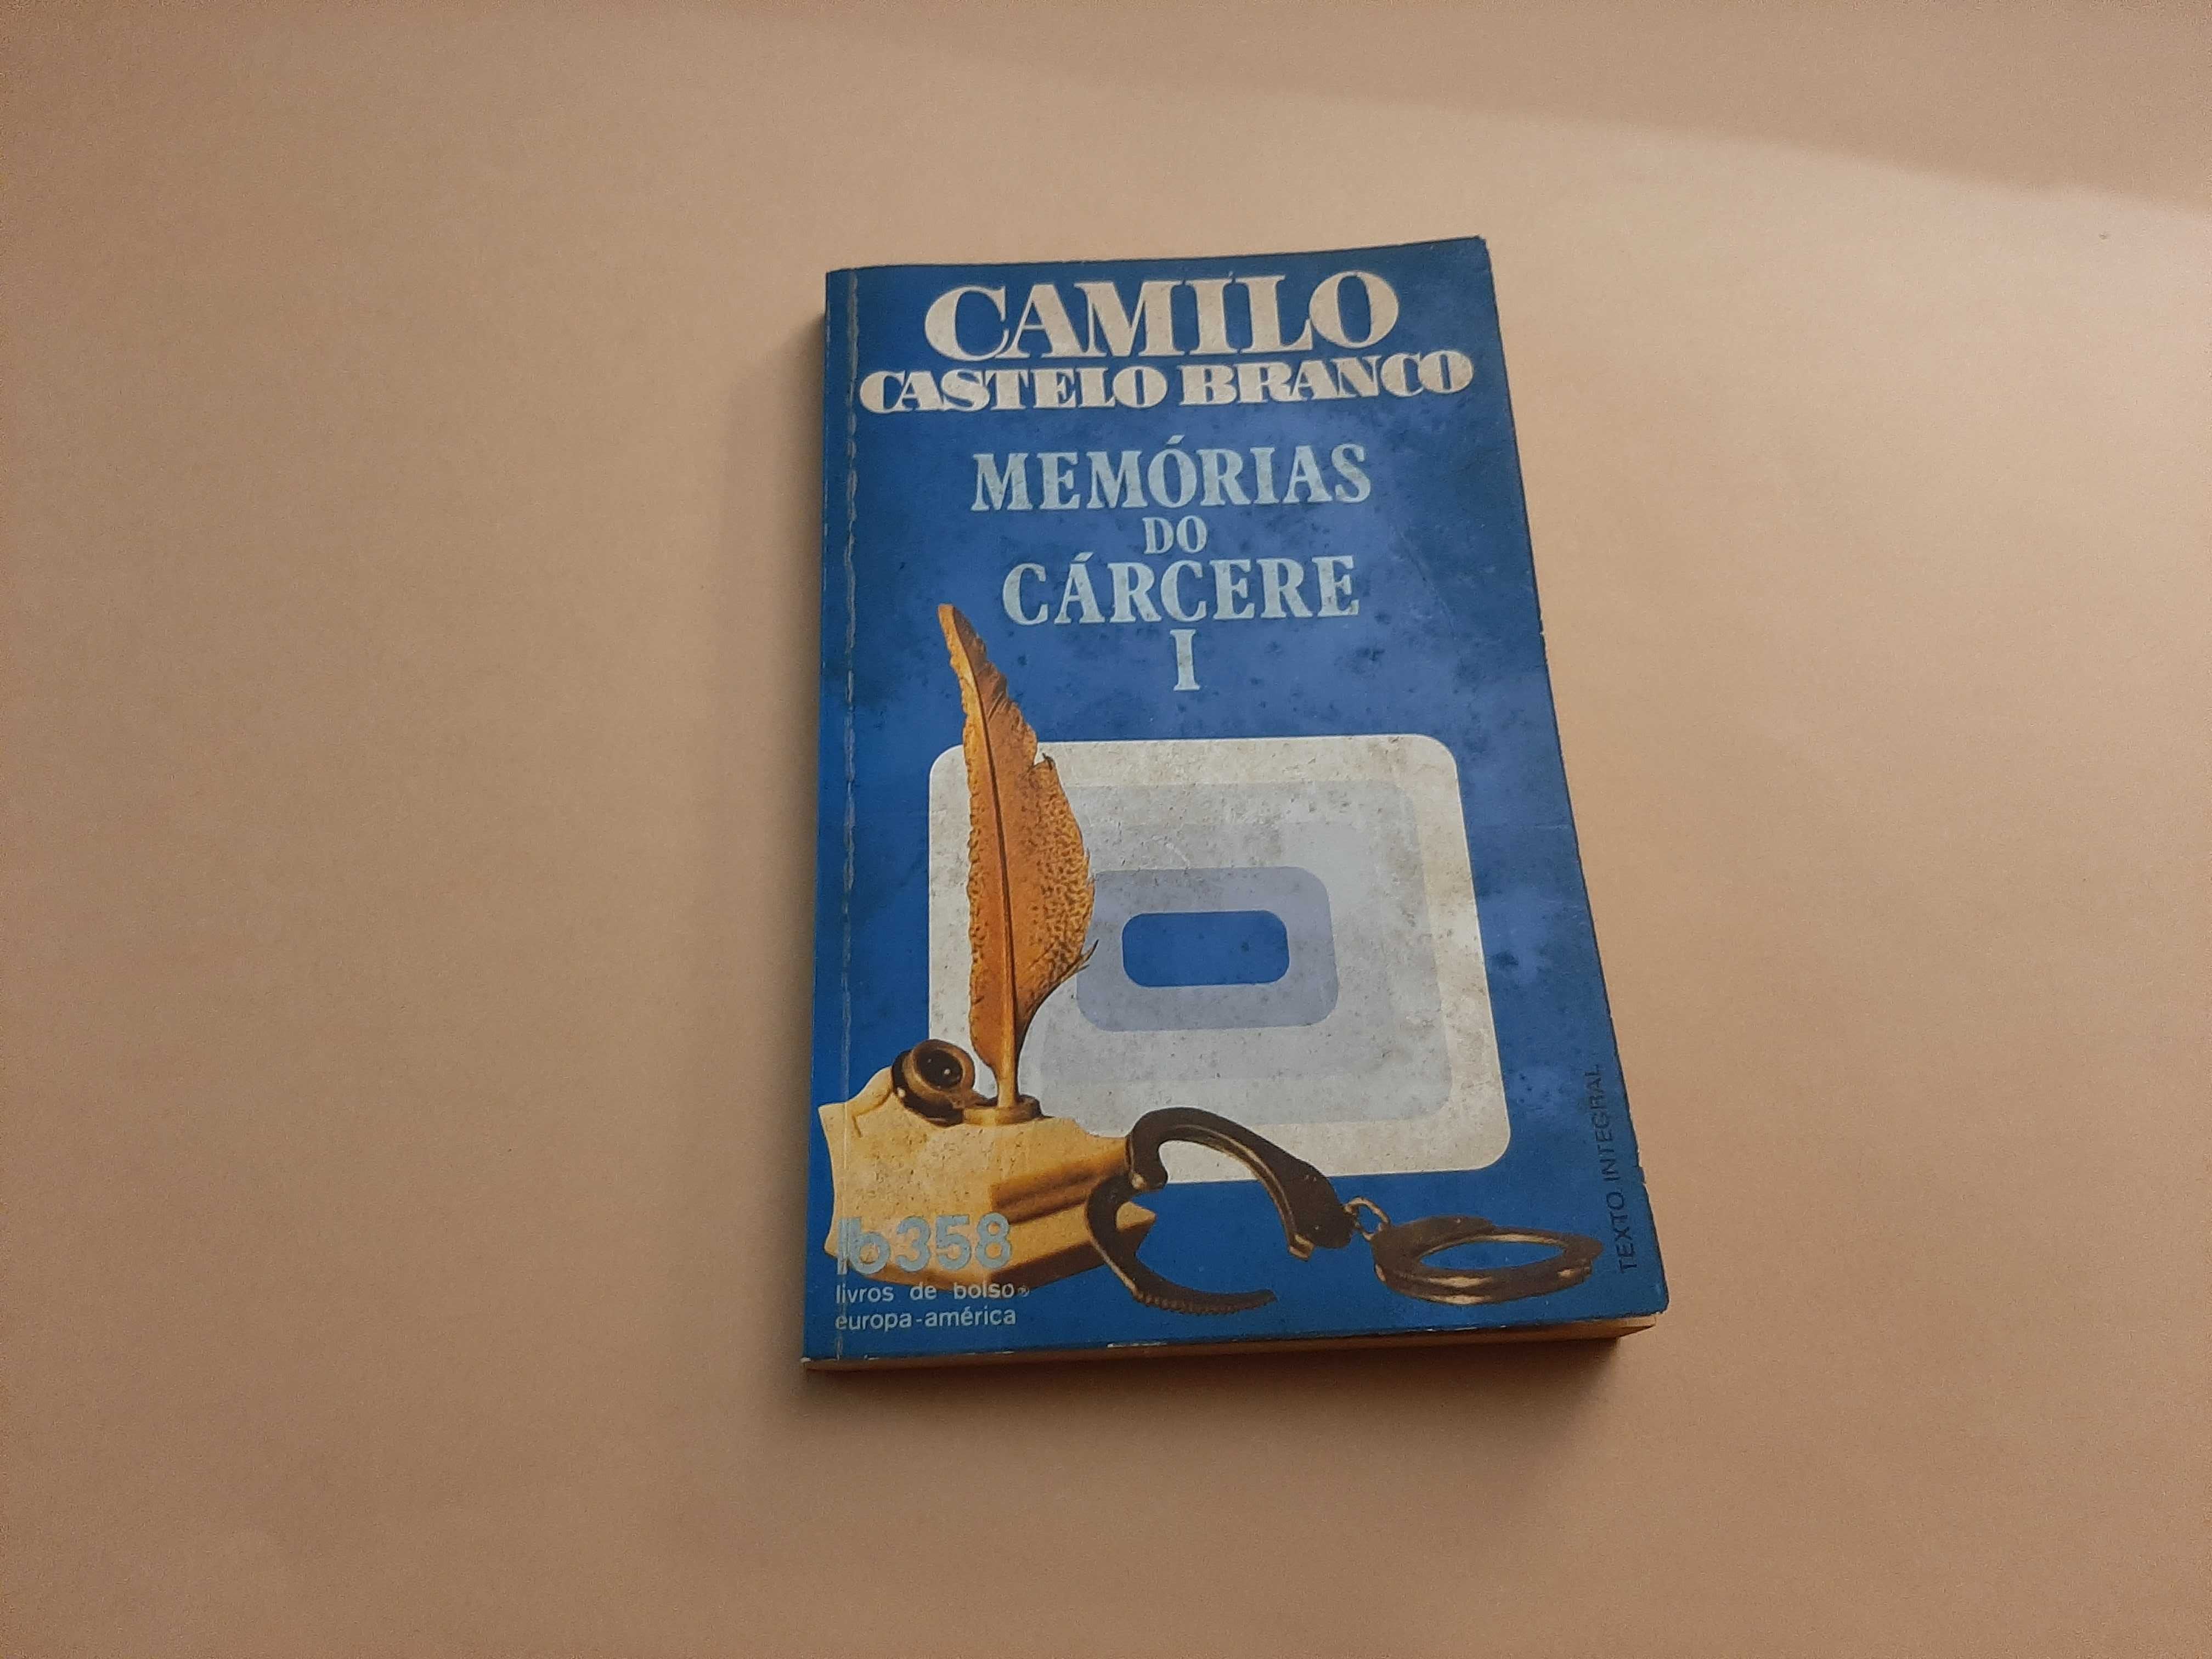 Memórias do Cárcere I de Camilo Castelo Branco